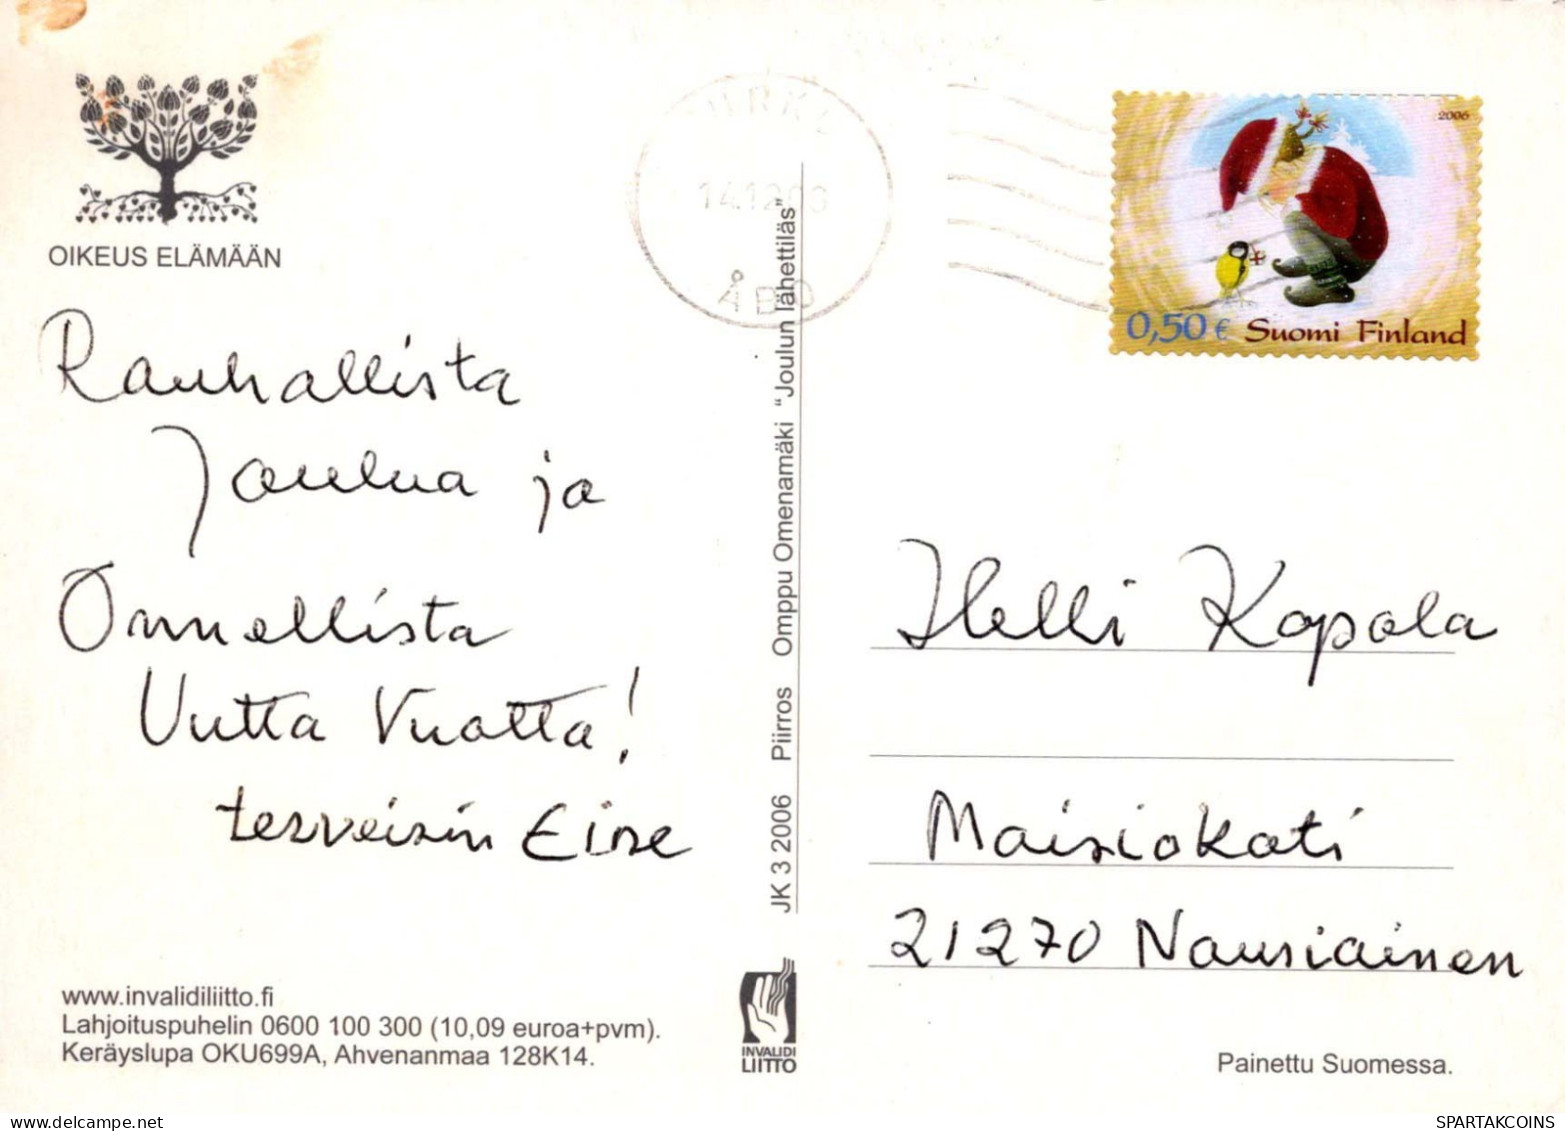 ANGE Noël Vintage Carte Postale CPSM #PBP469.FR - Engelen